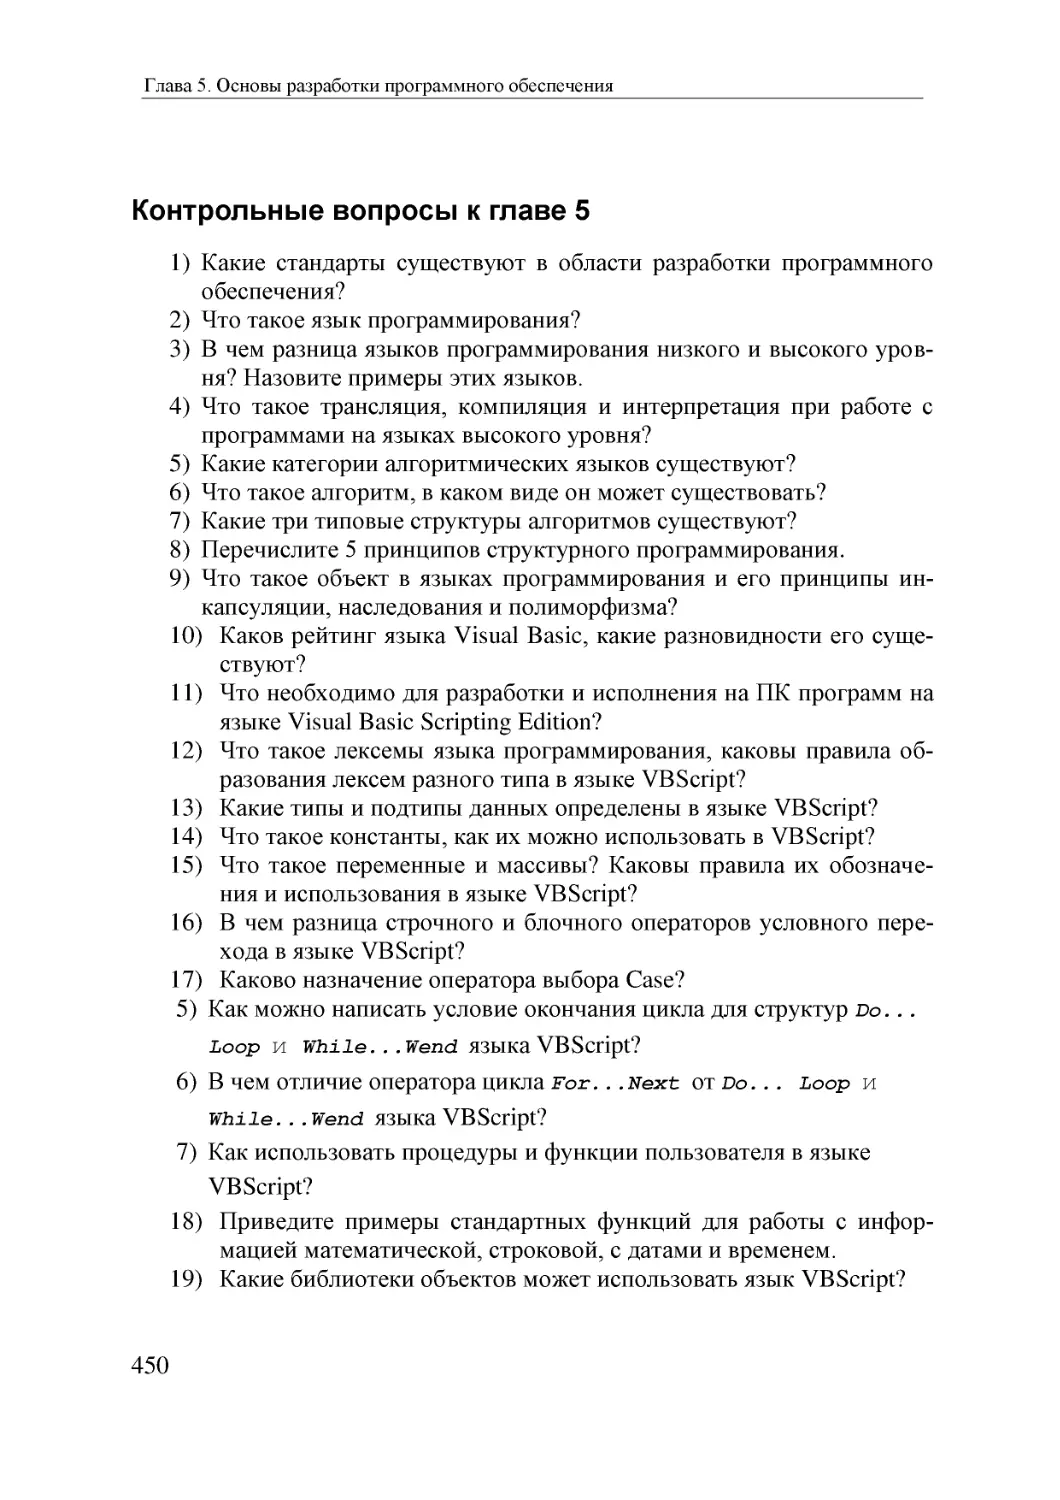 Informatika_Uchebnik_dlya_vuzov_2010 450